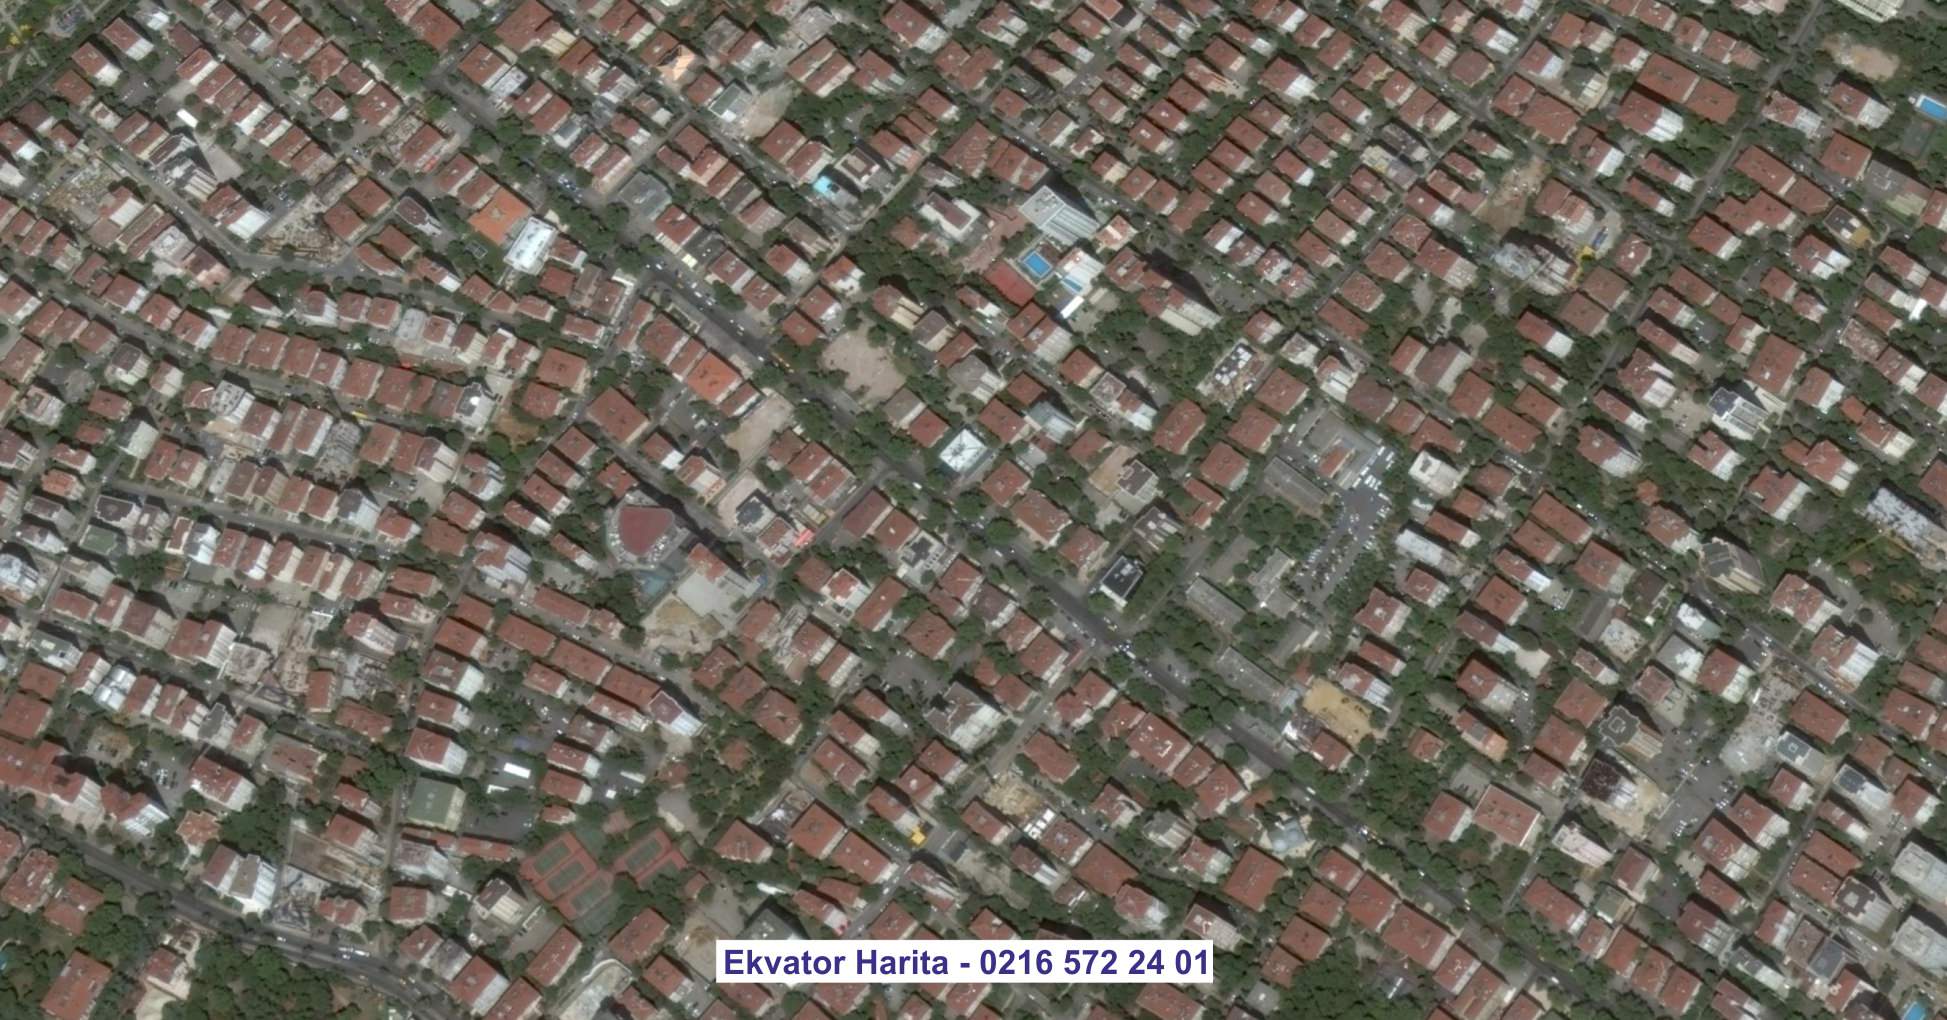 Kırşehir Uydu Görüntüsü Örnek Fotoğrafı